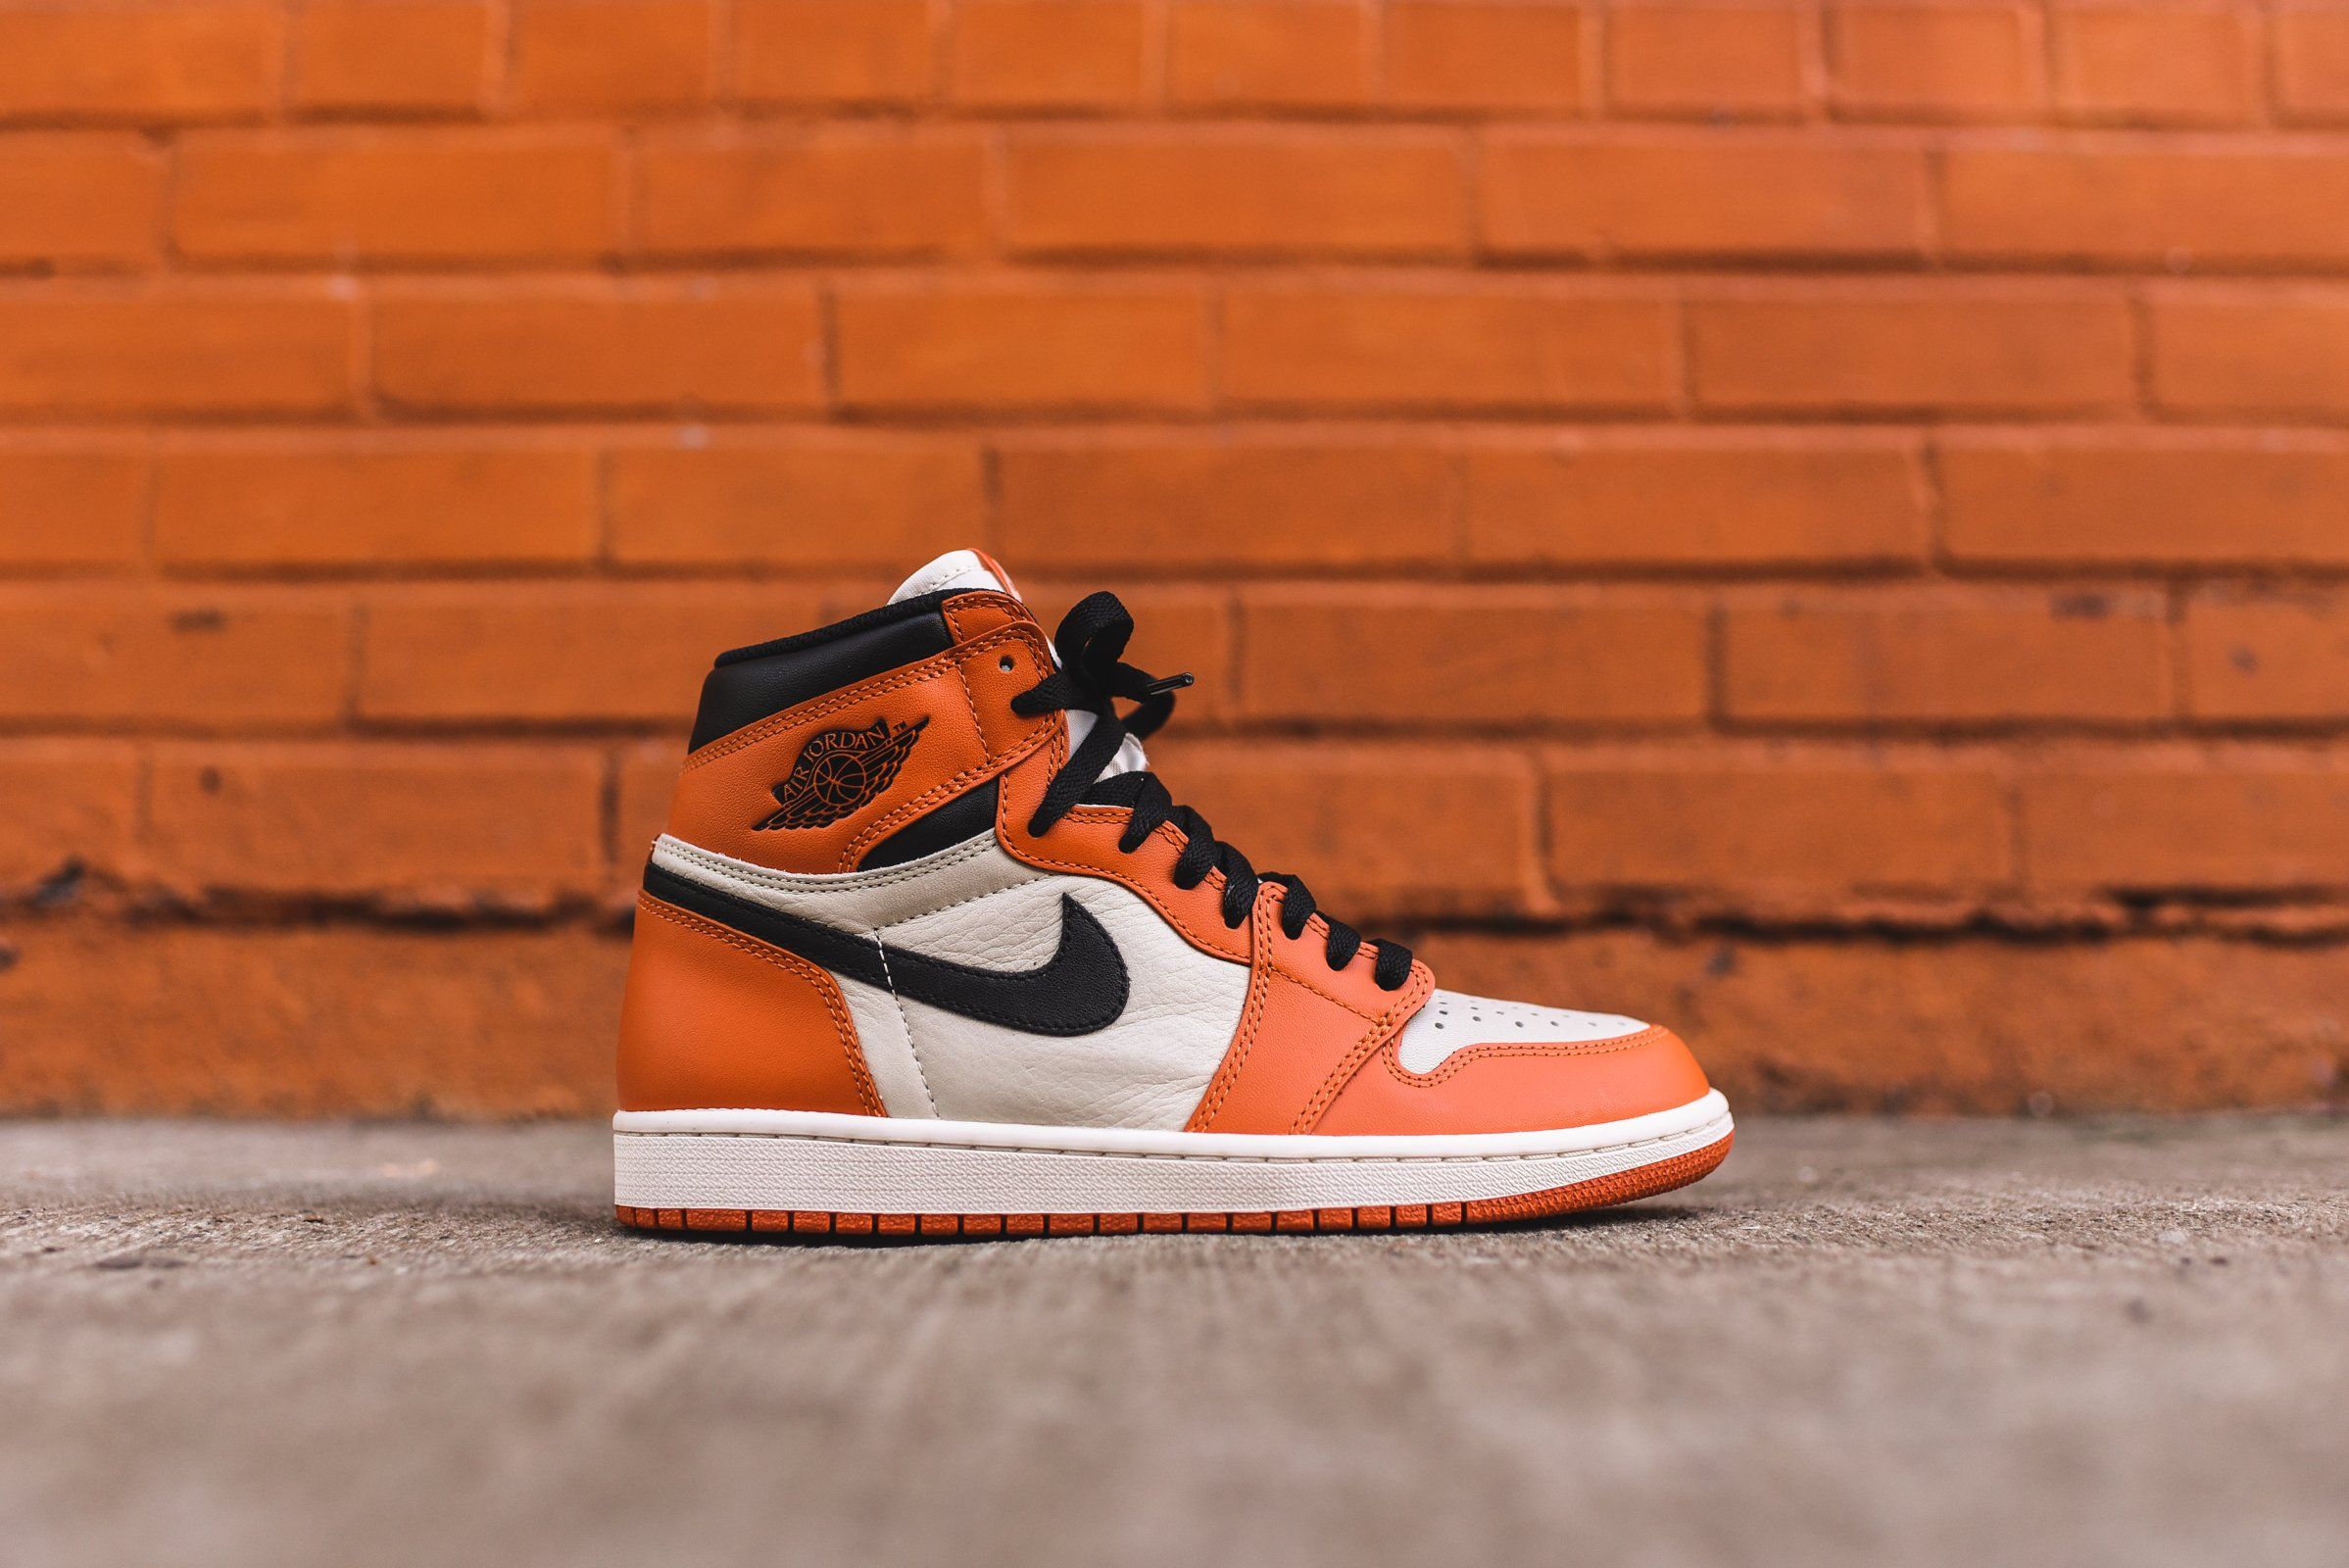 Orange Jordan Wallpapers